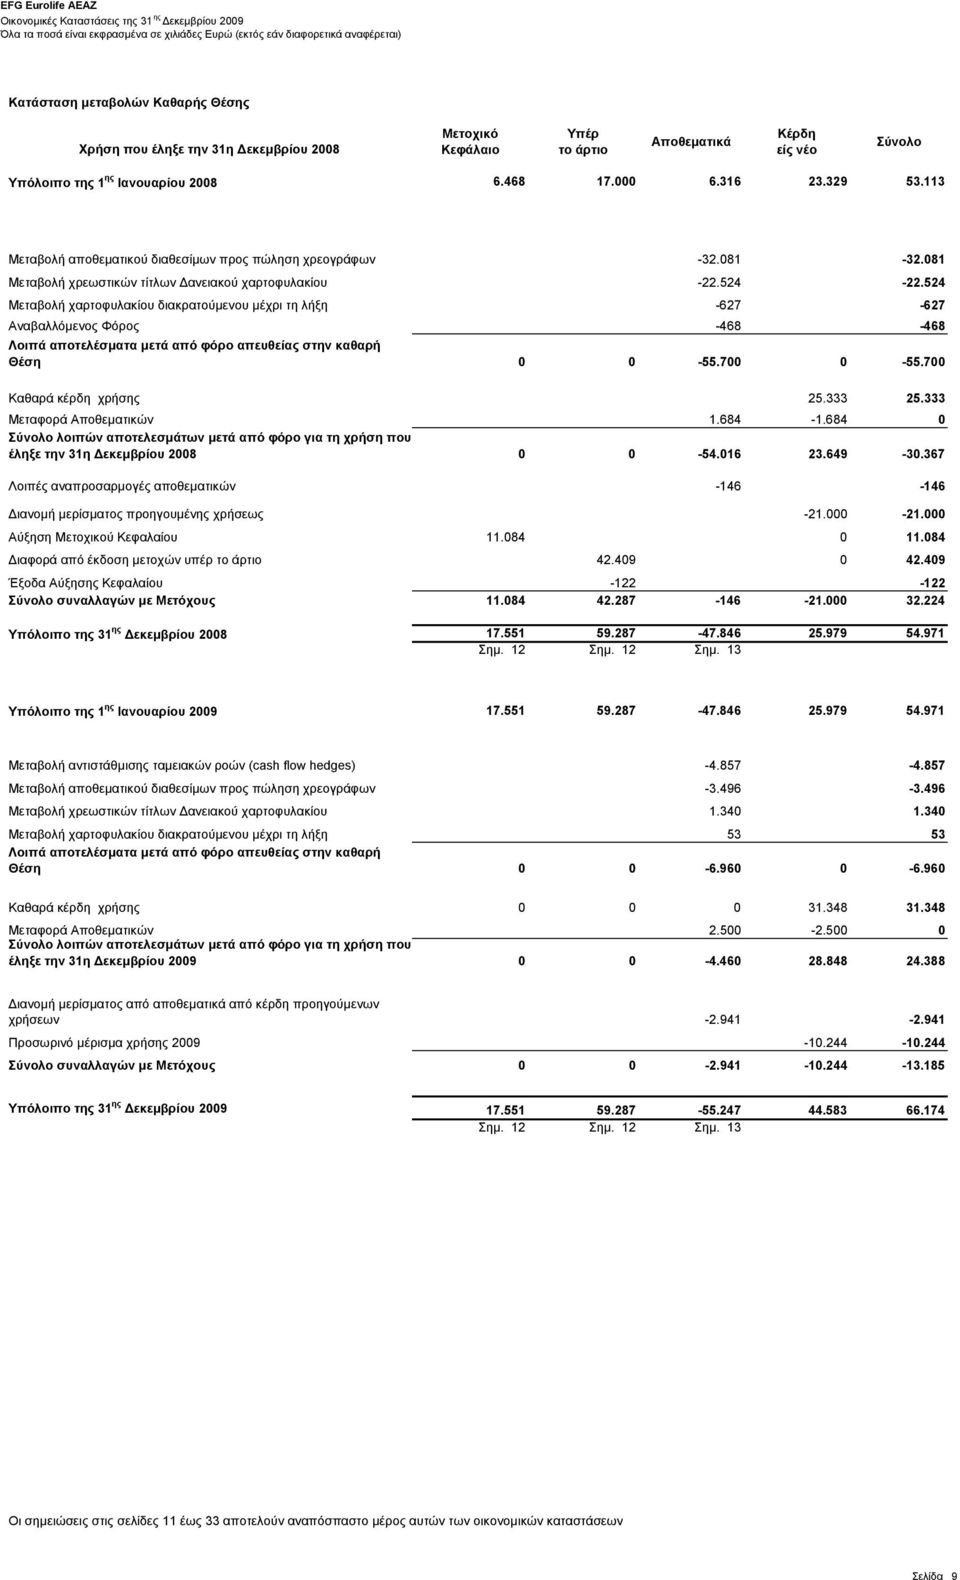 αποτελέσματα μετά από φόρο απευθείας στην καθαρή Θέση Καθαρά κέρδη χρήσης Μεταφορά Αποθεματικών λοιπών αποτελεσμάτων μετά από φόρο για τη χρήση που έληξε την 31η Δεκεμβρίου 2008 Λοιπές αναπροσαρμογές